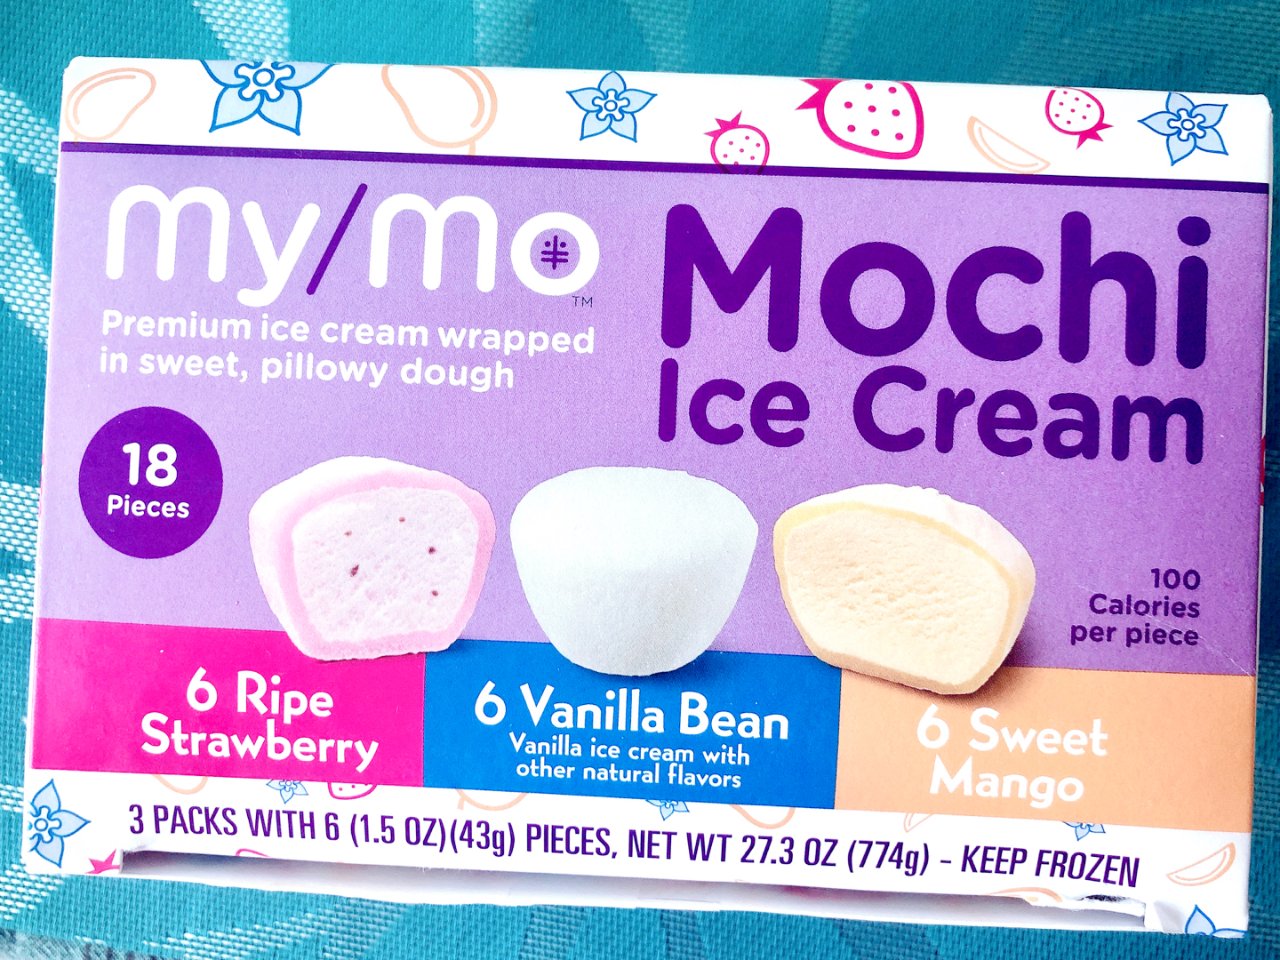 摆摊儿8: mochi冰激淋来一波...